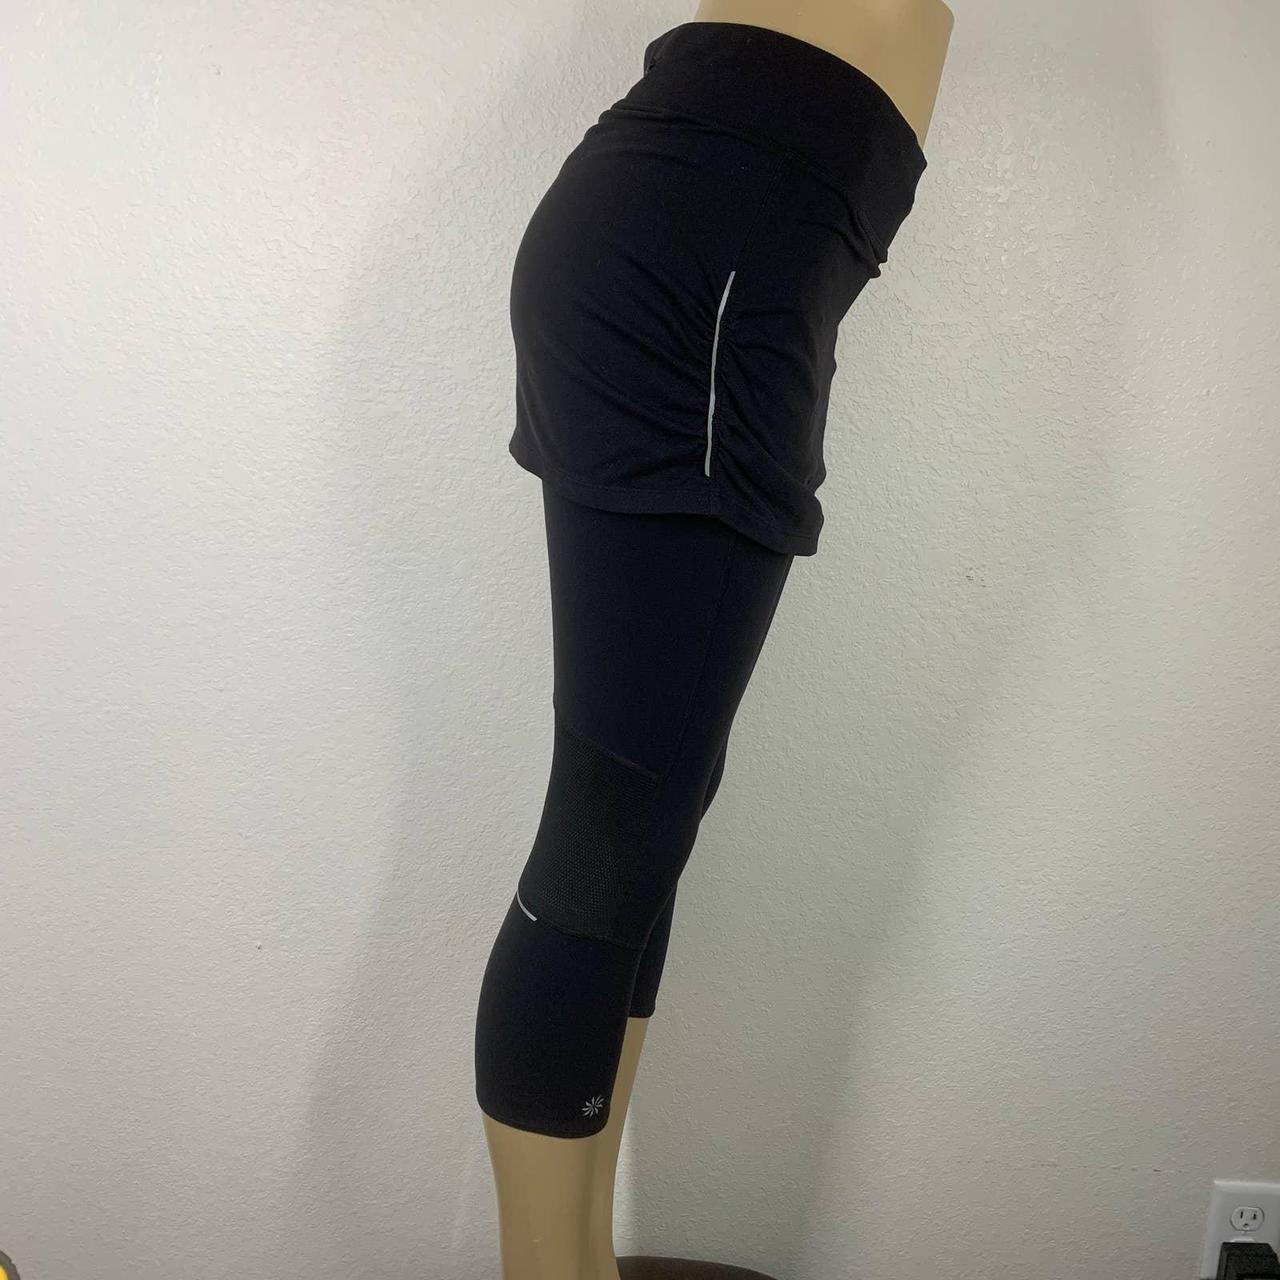 Athleta skirt leggings Contender black with - Depop